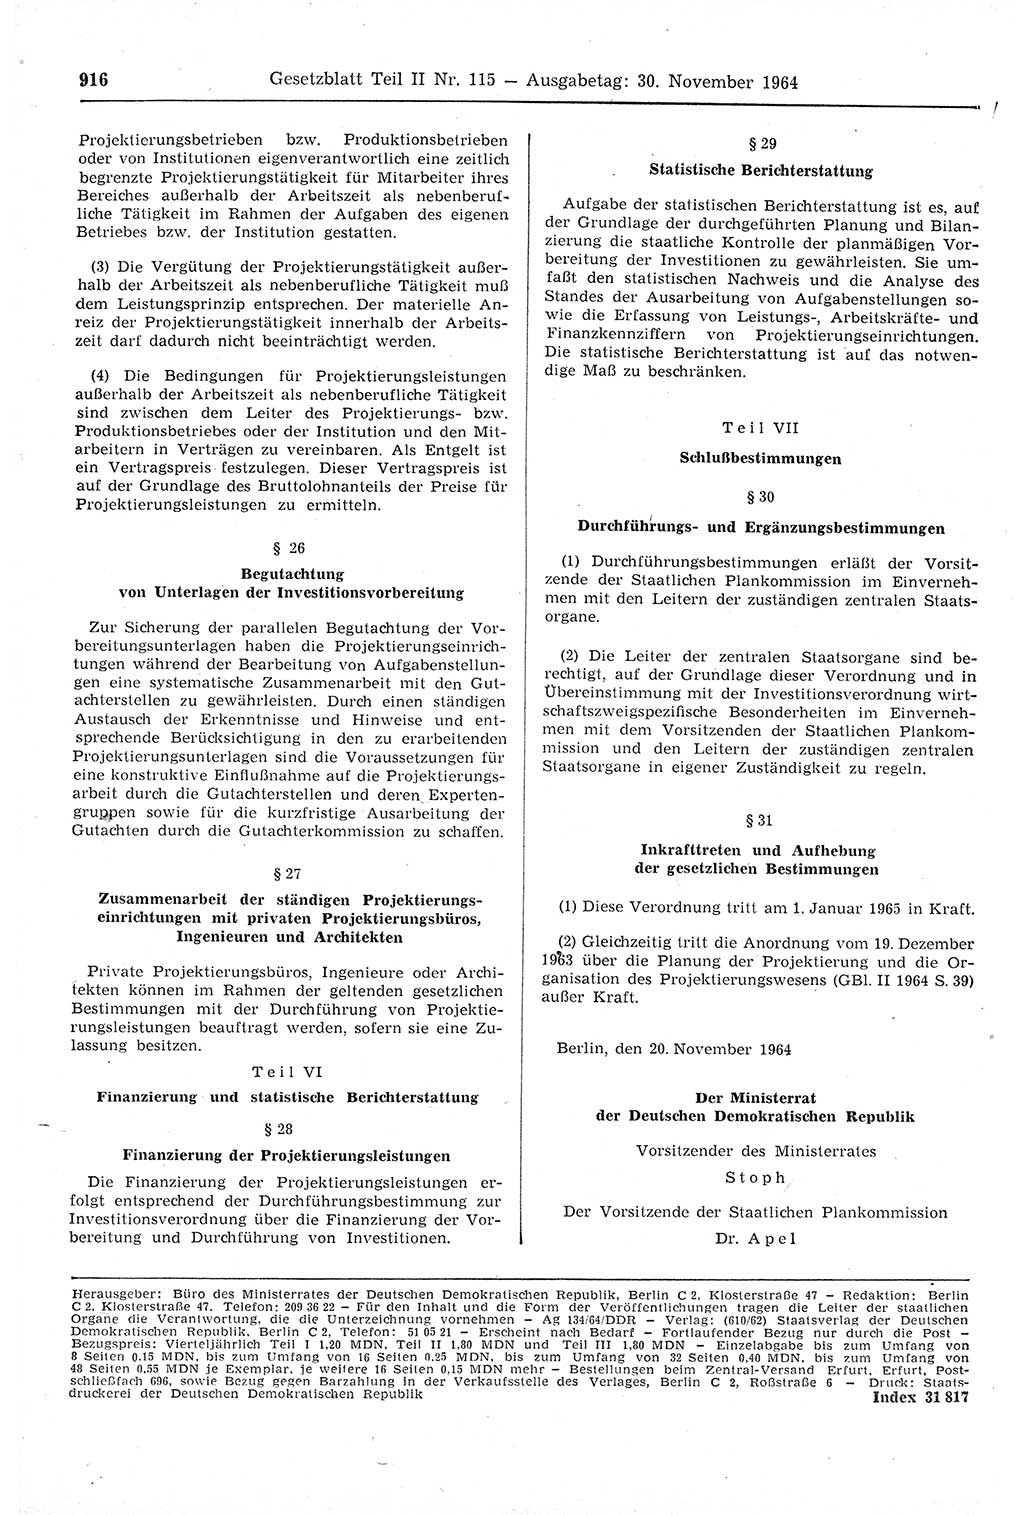 Gesetzblatt (GBl.) der Deutschen Demokratischen Republik (DDR) Teil ⅠⅠ 1964, Seite 916 (GBl. DDR ⅠⅠ 1964, S. 916)